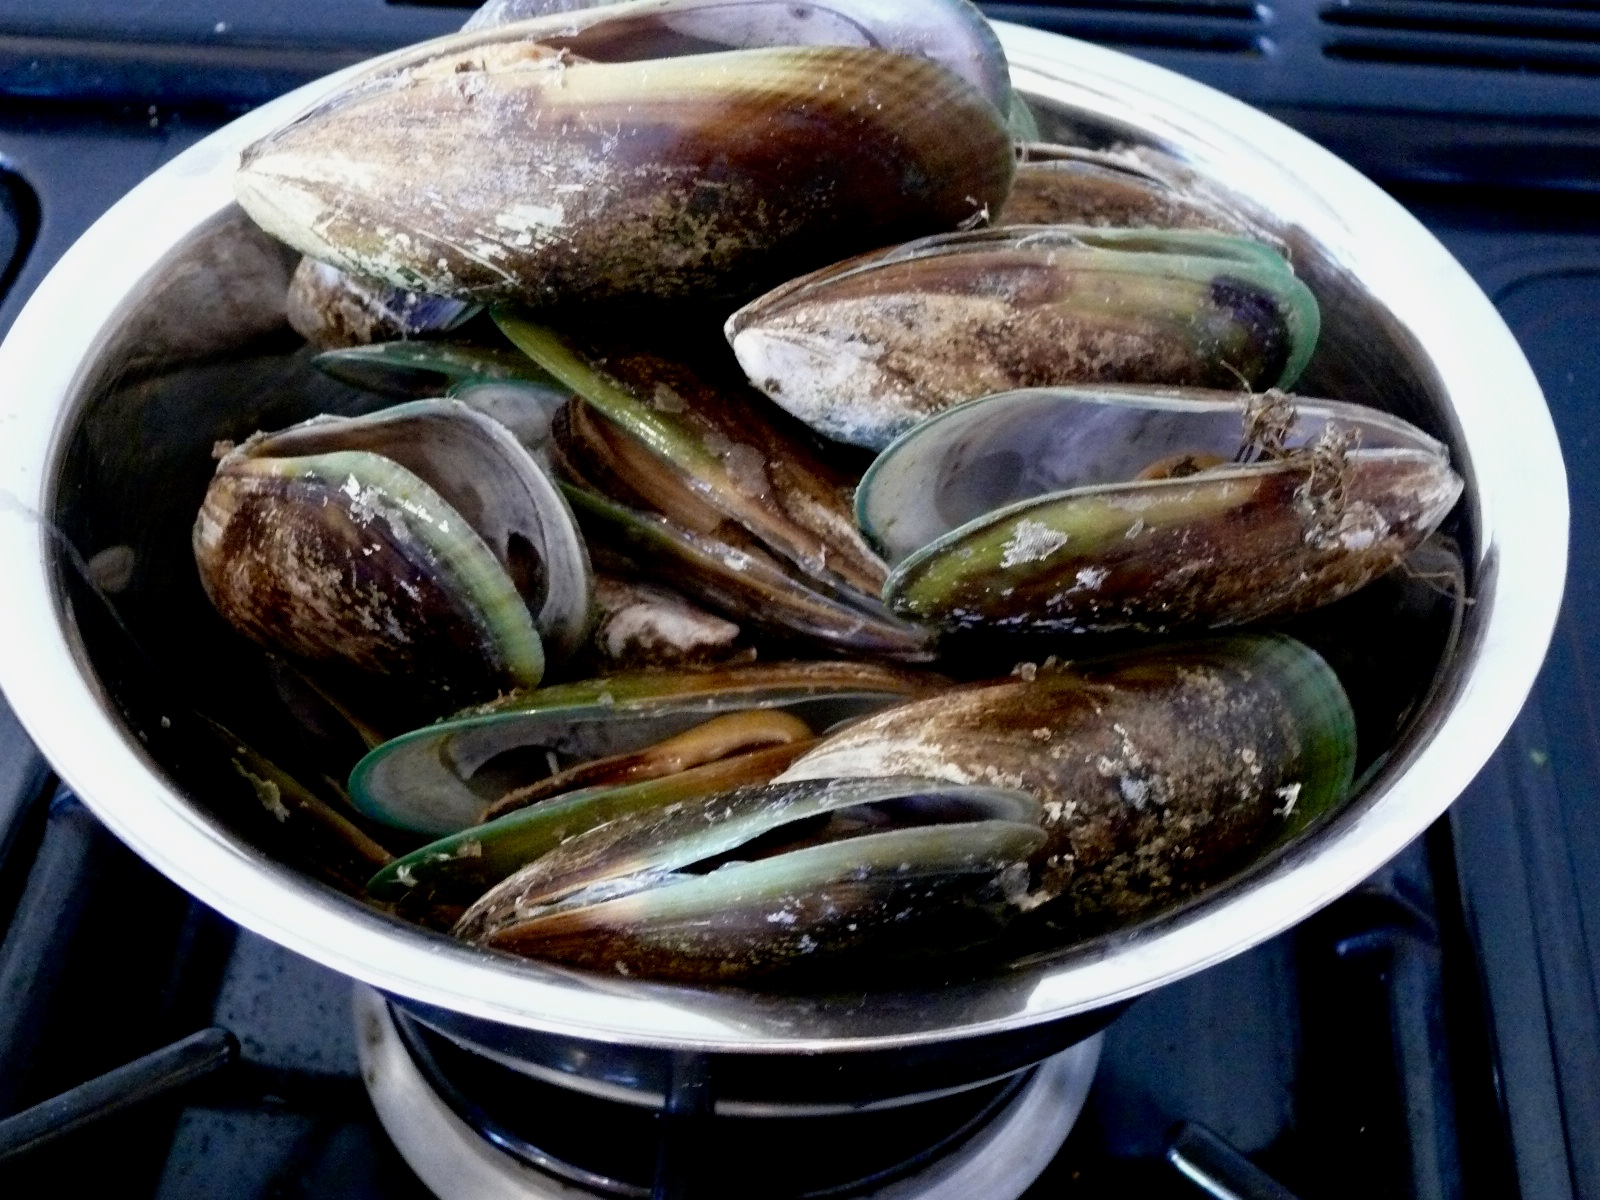 NZ green lip mussels